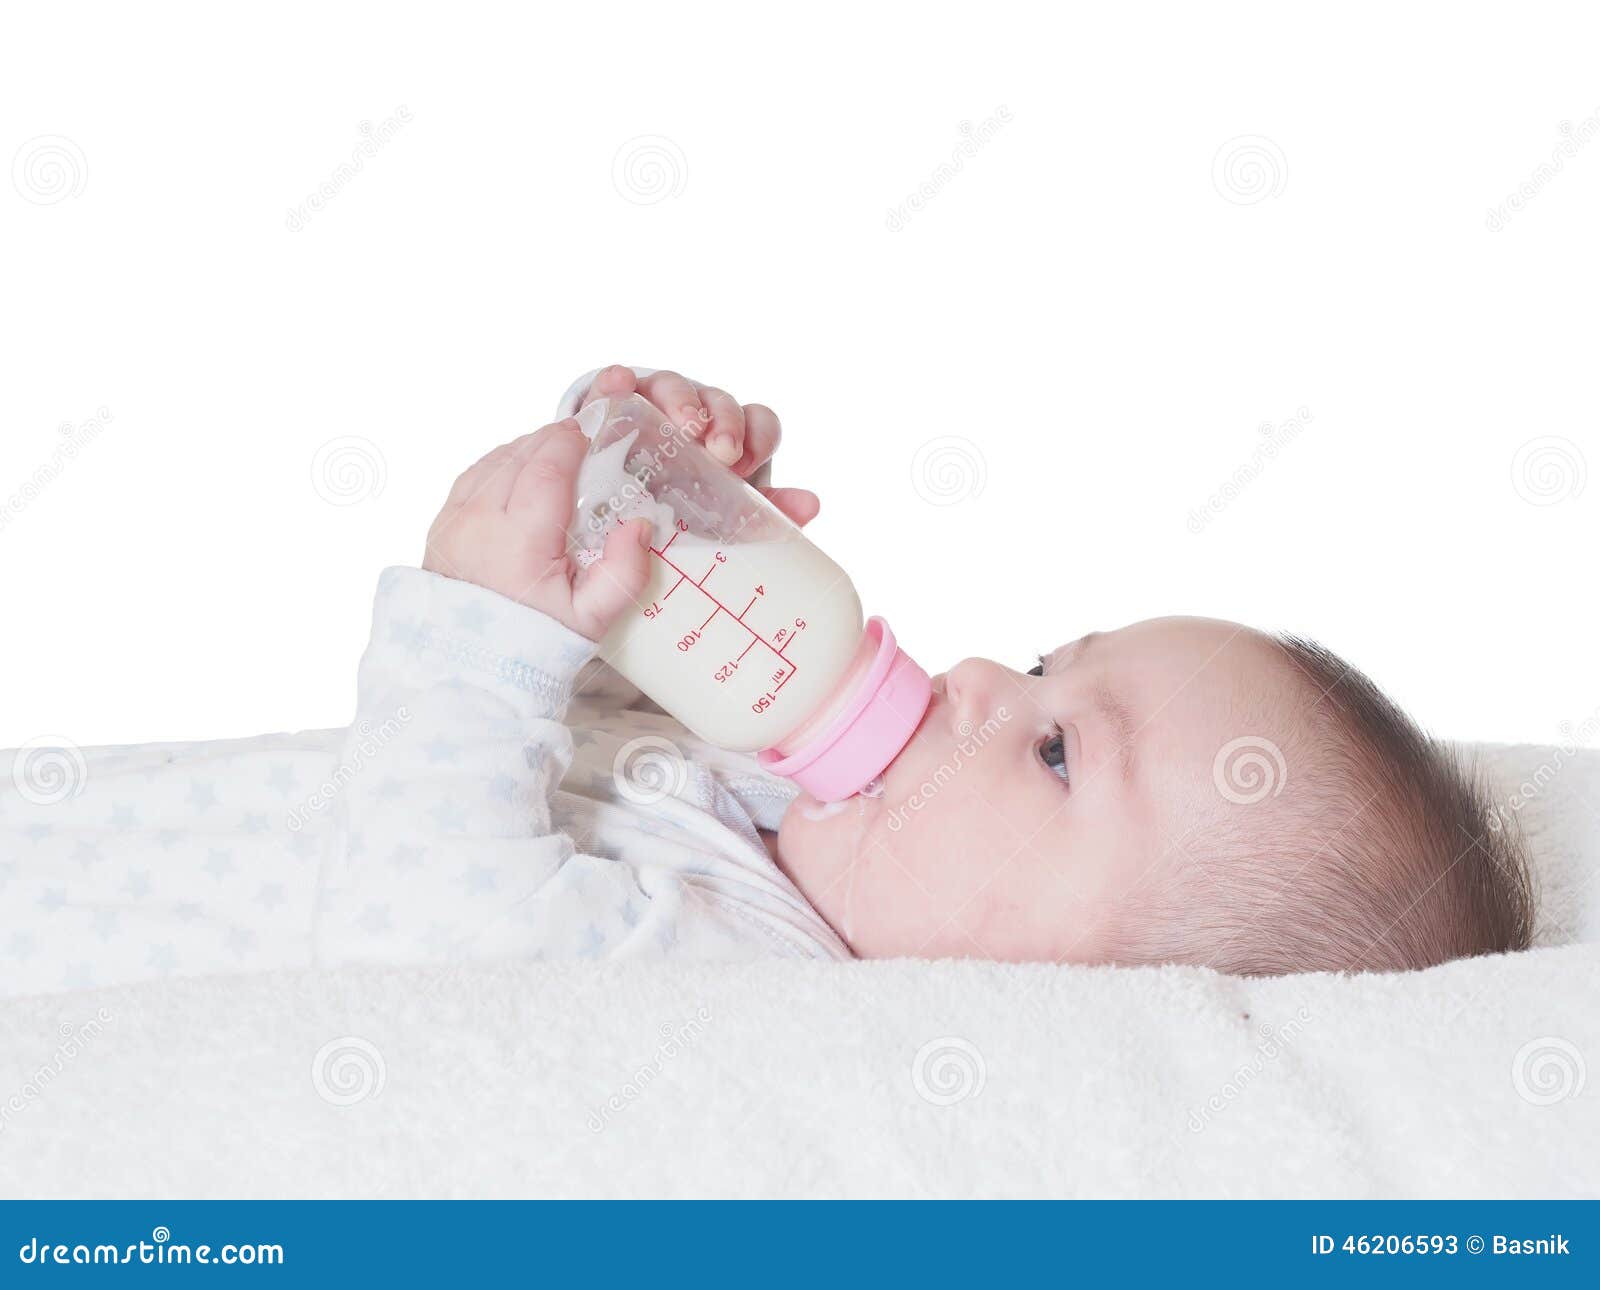 Съесть бутылочку. Ребенок с бутылкой молока. Младенец с бутылочкой. Маленькие бутылочки для детей. Малыш пьет молоко из бутылочки.